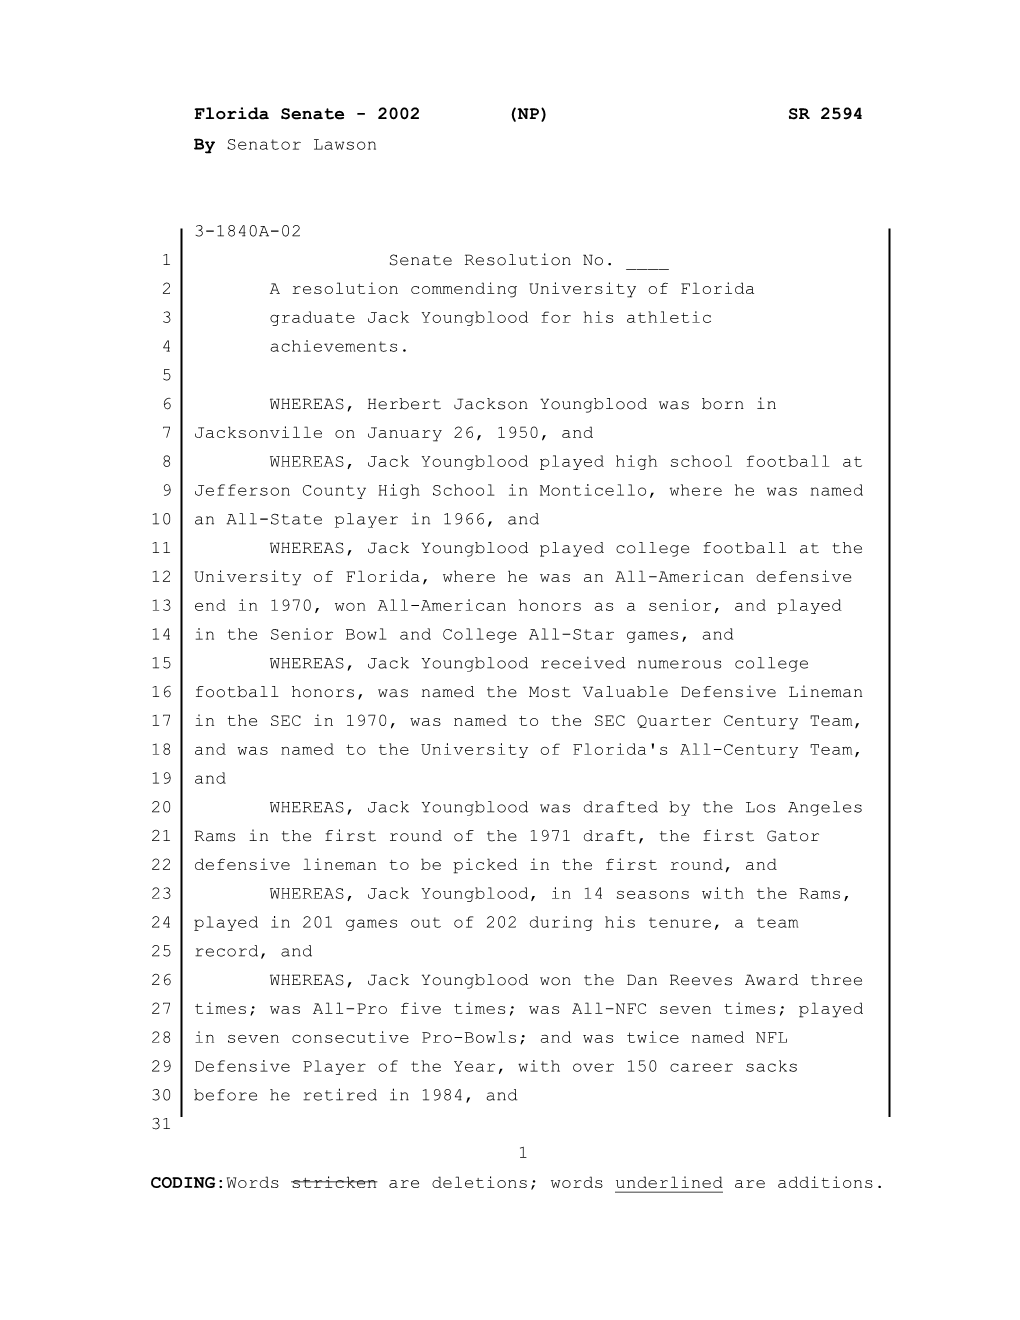 Florida Senate - 2002 (NP) SR 2594 by Senator Lawson